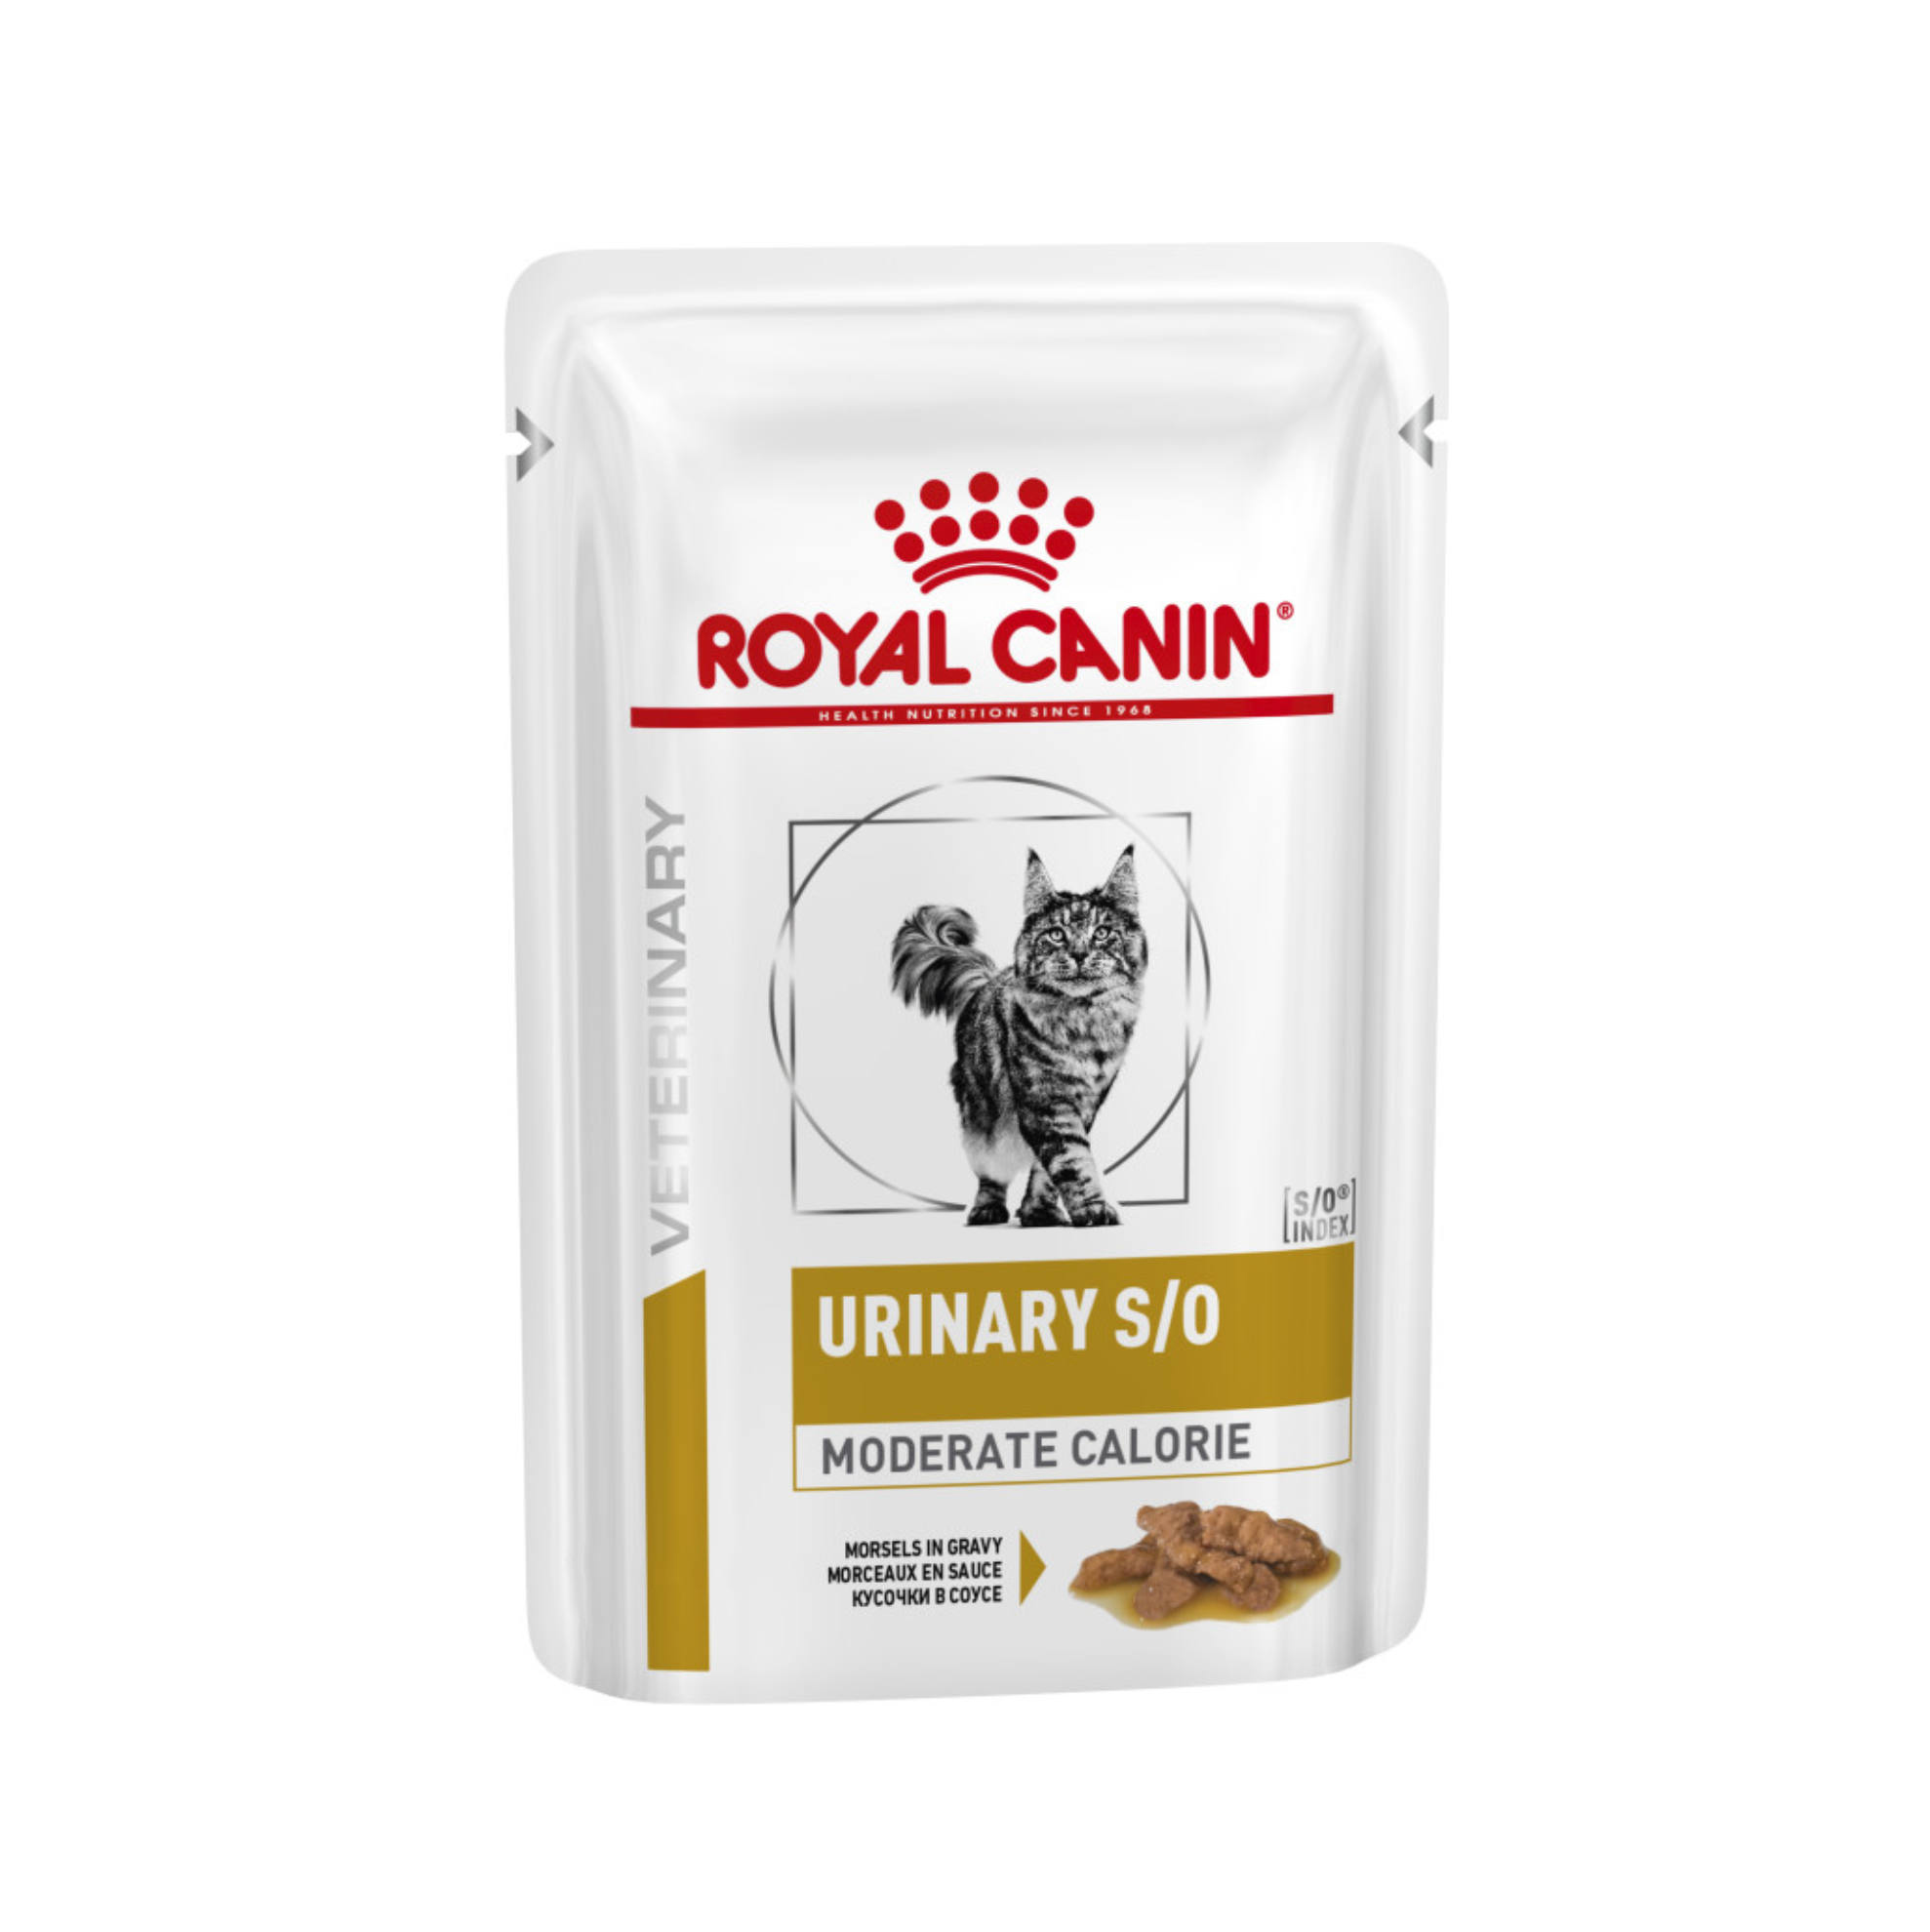 Royal Canin Urinary S/O - Pate cho mèo bị sỏi thận 85g